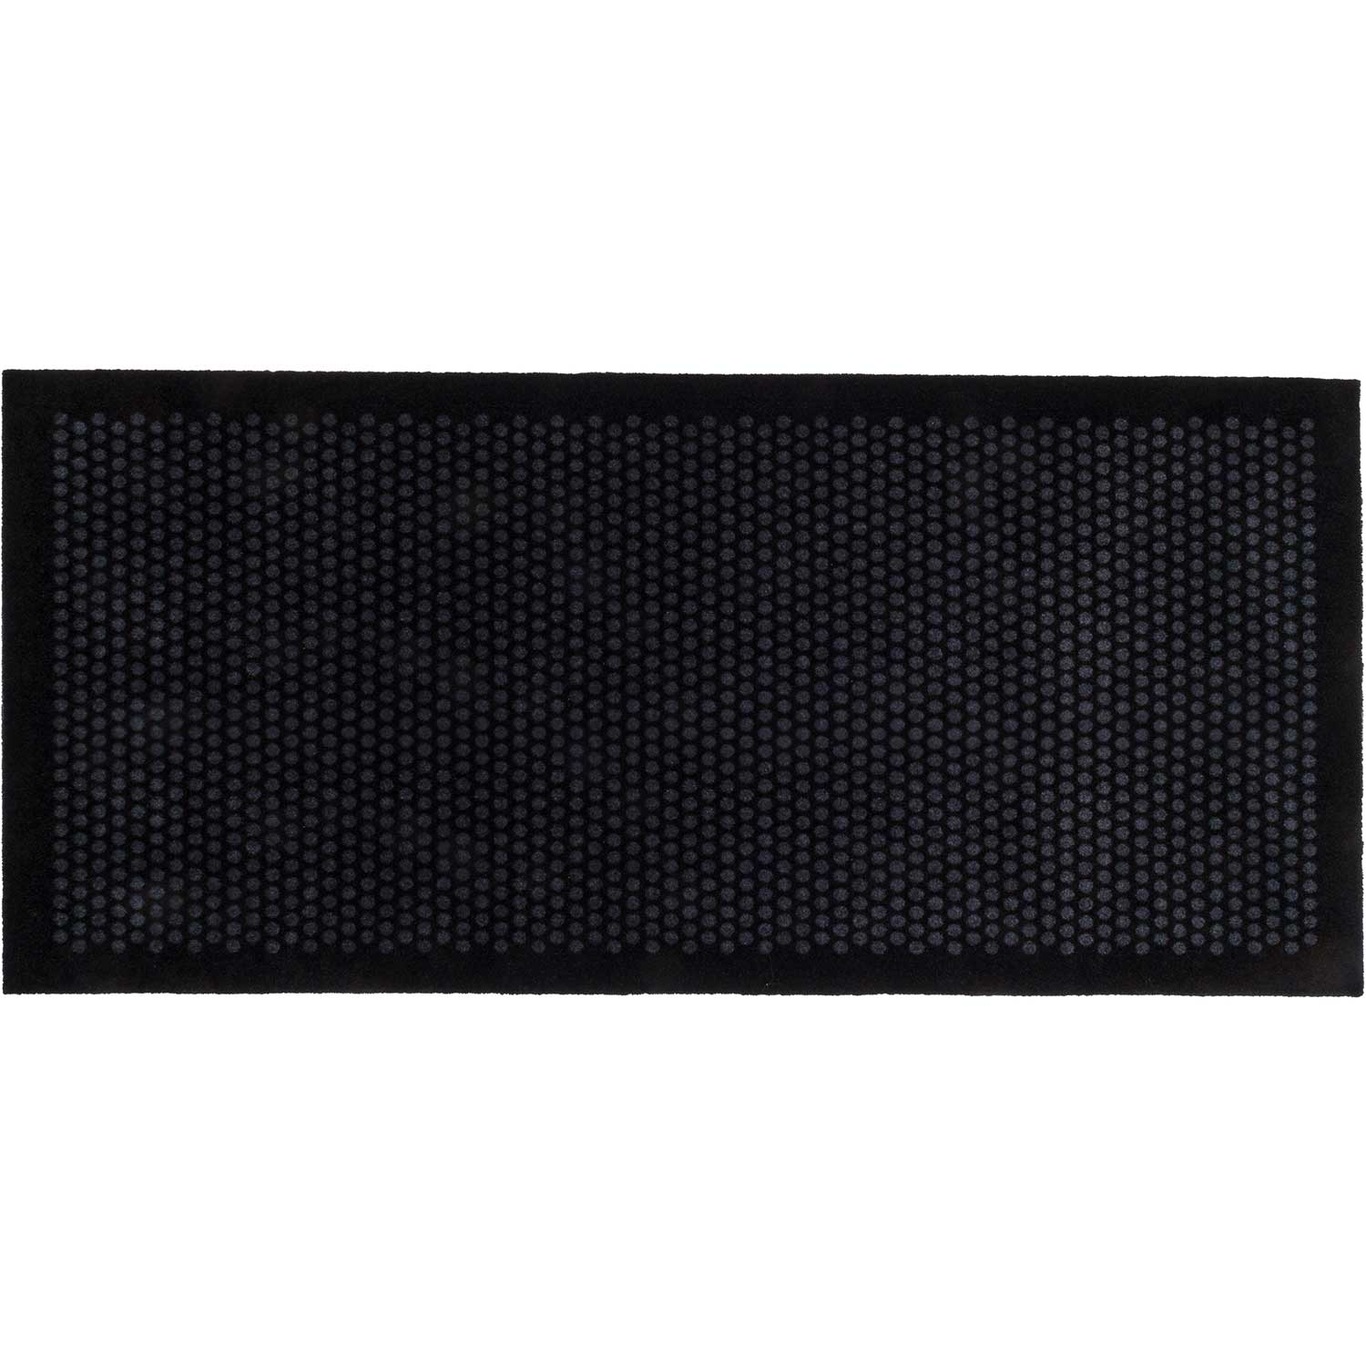 Dot Doormat 90x200cm, Black/Grey